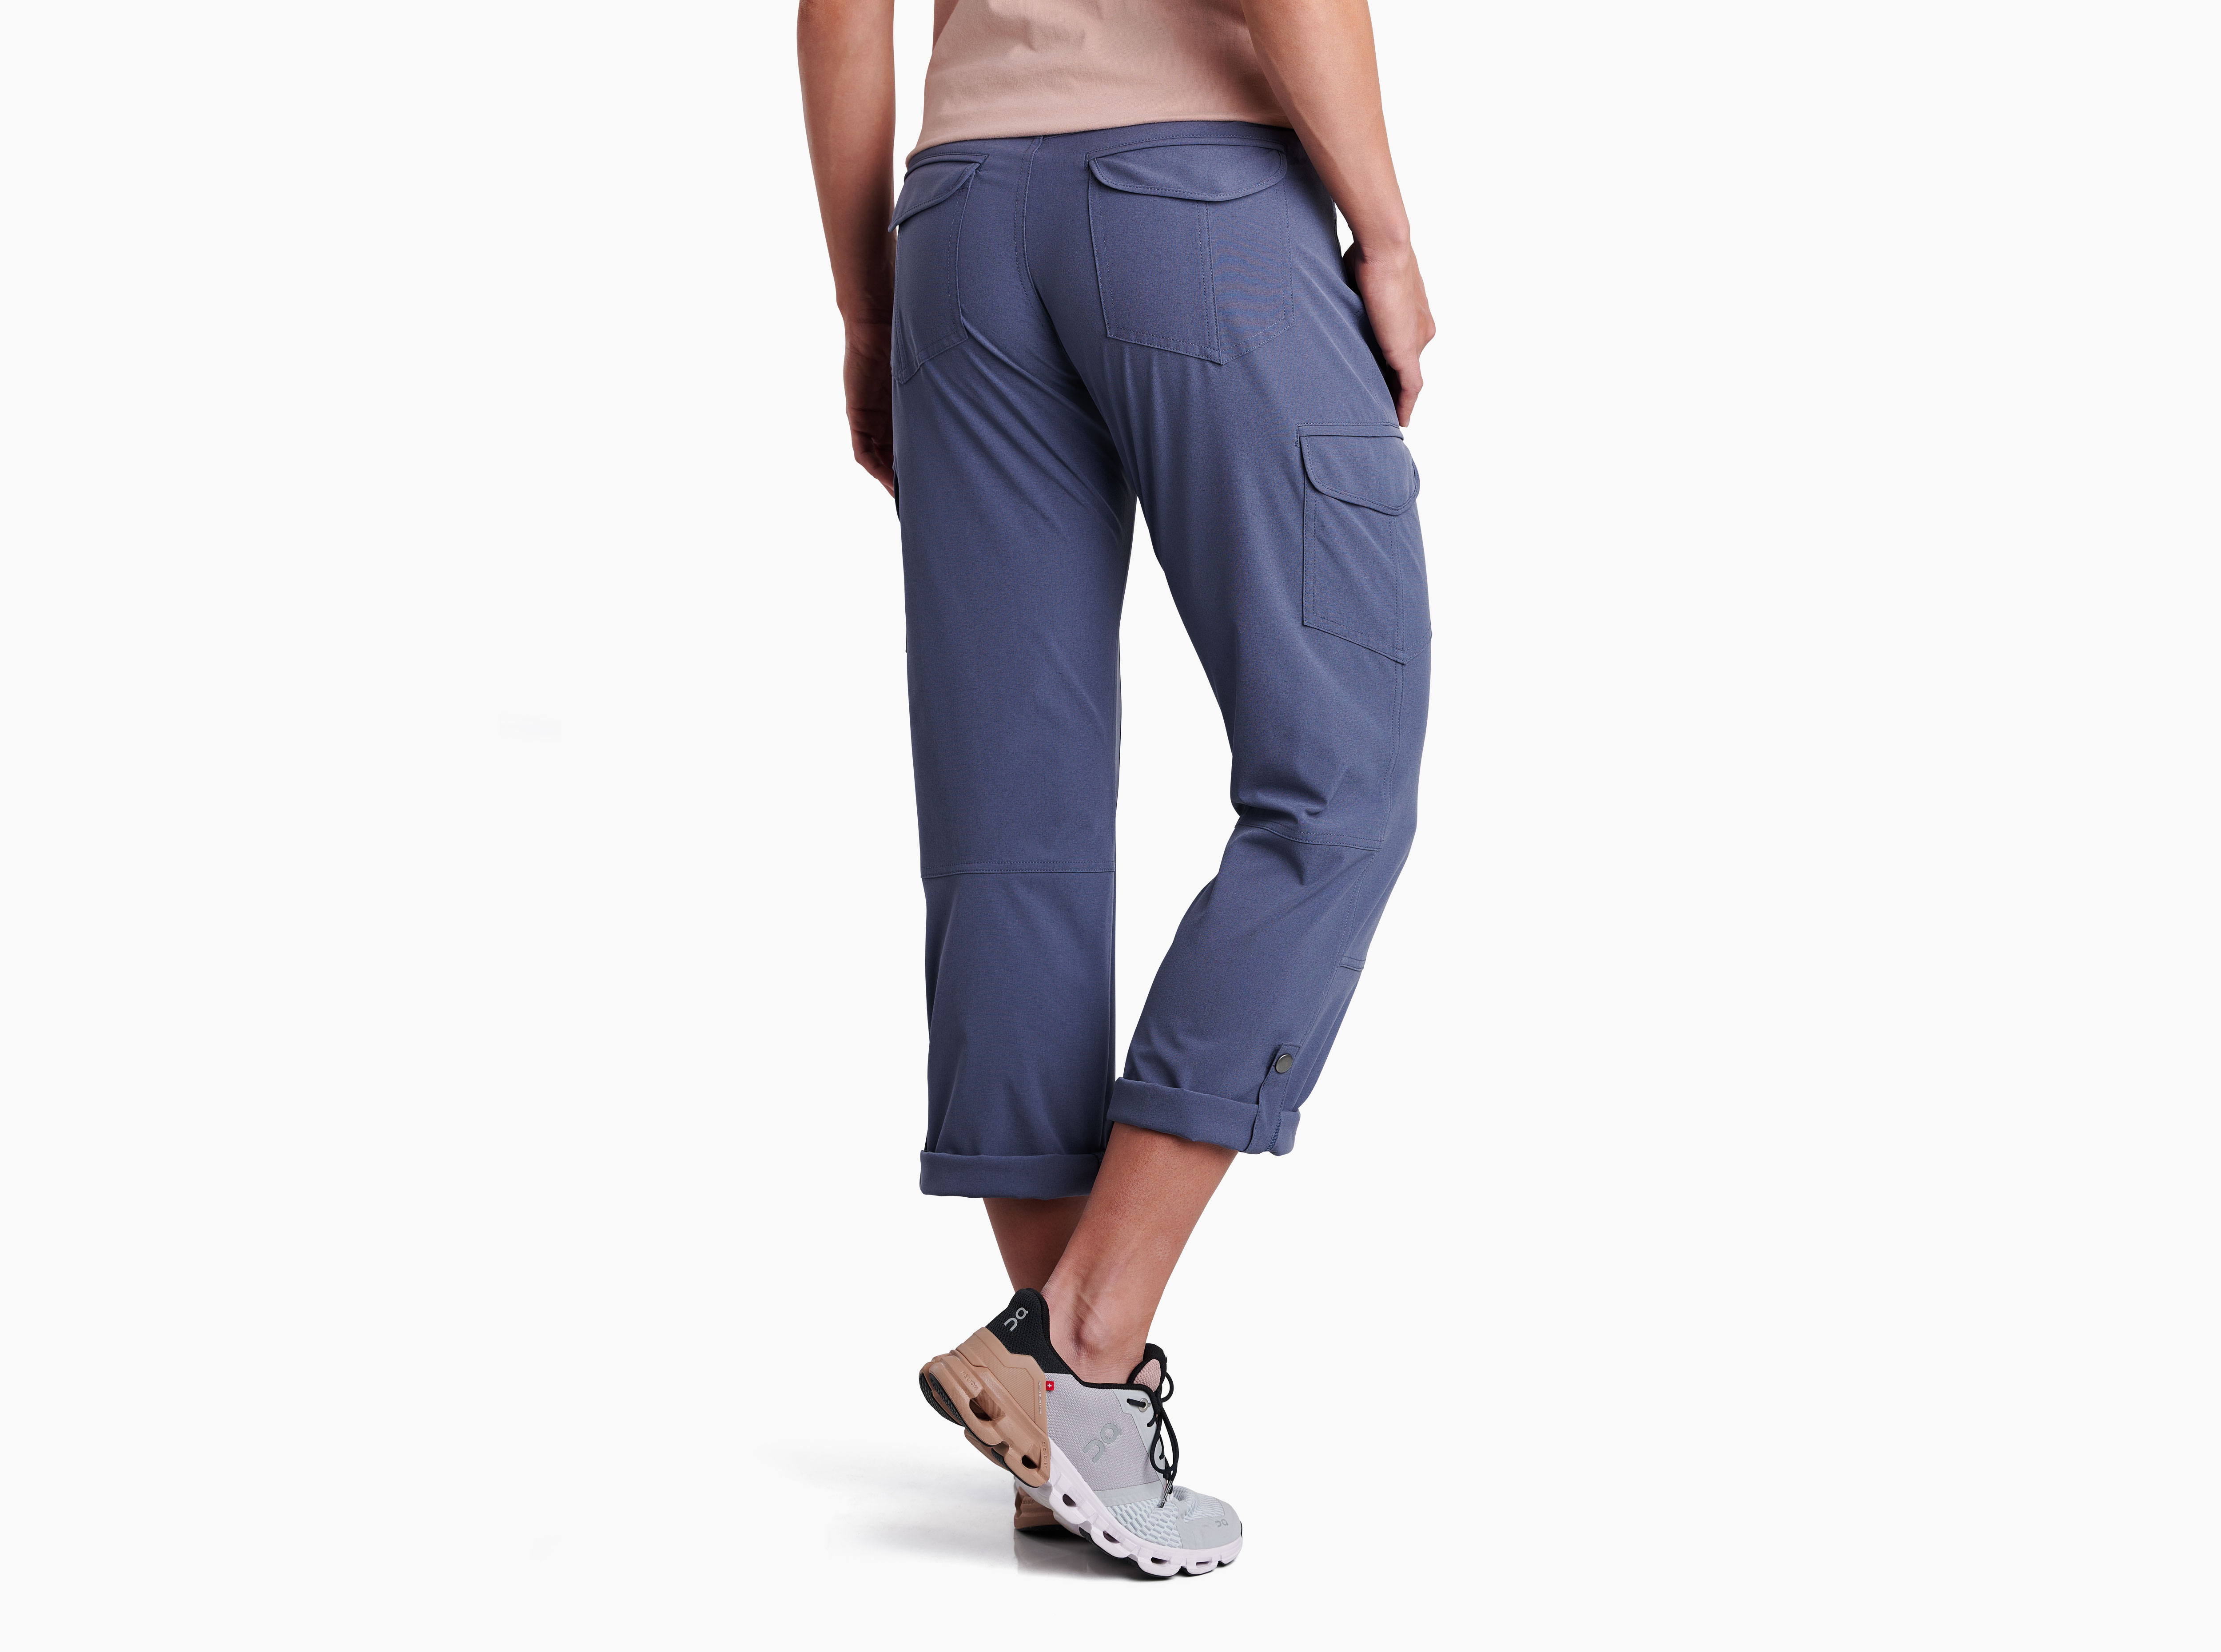 Freeflex™ Metro in Women's Pants